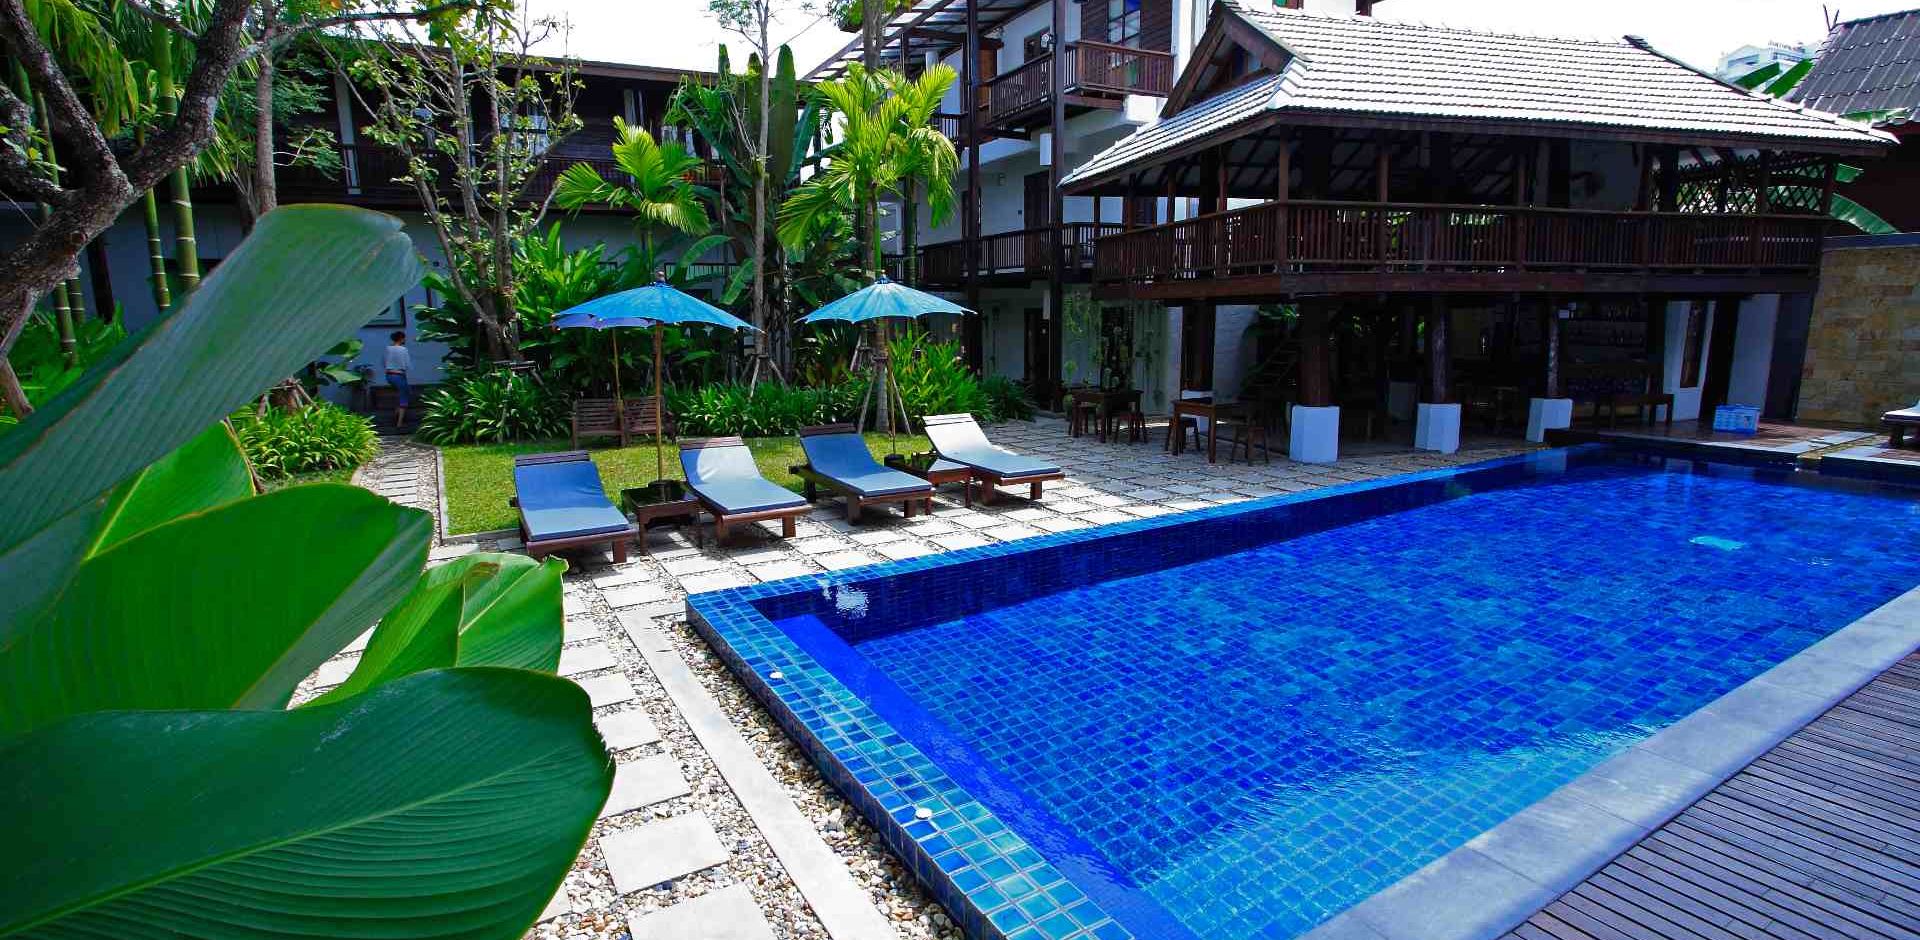 Rejser til Thailand, Chiang Mai, Banthai Village, pool